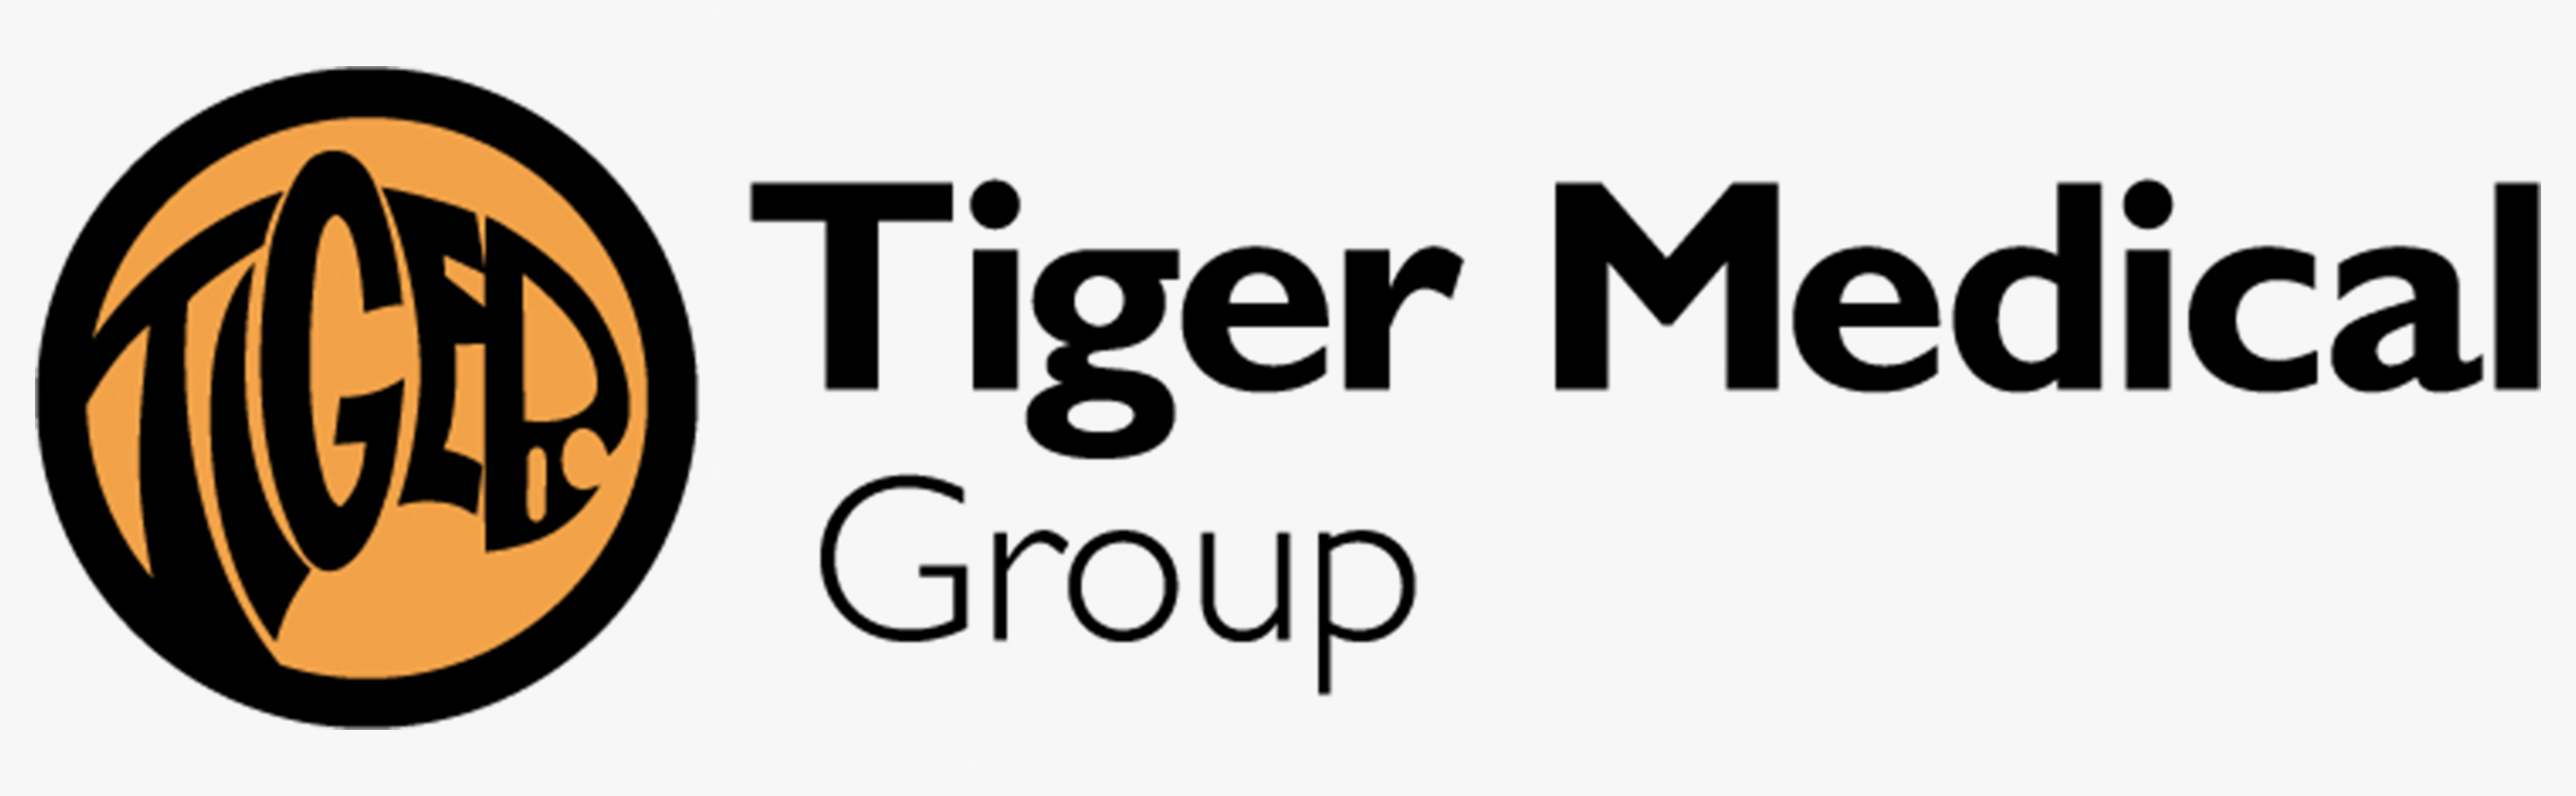 ASP-Tiger Medical Group